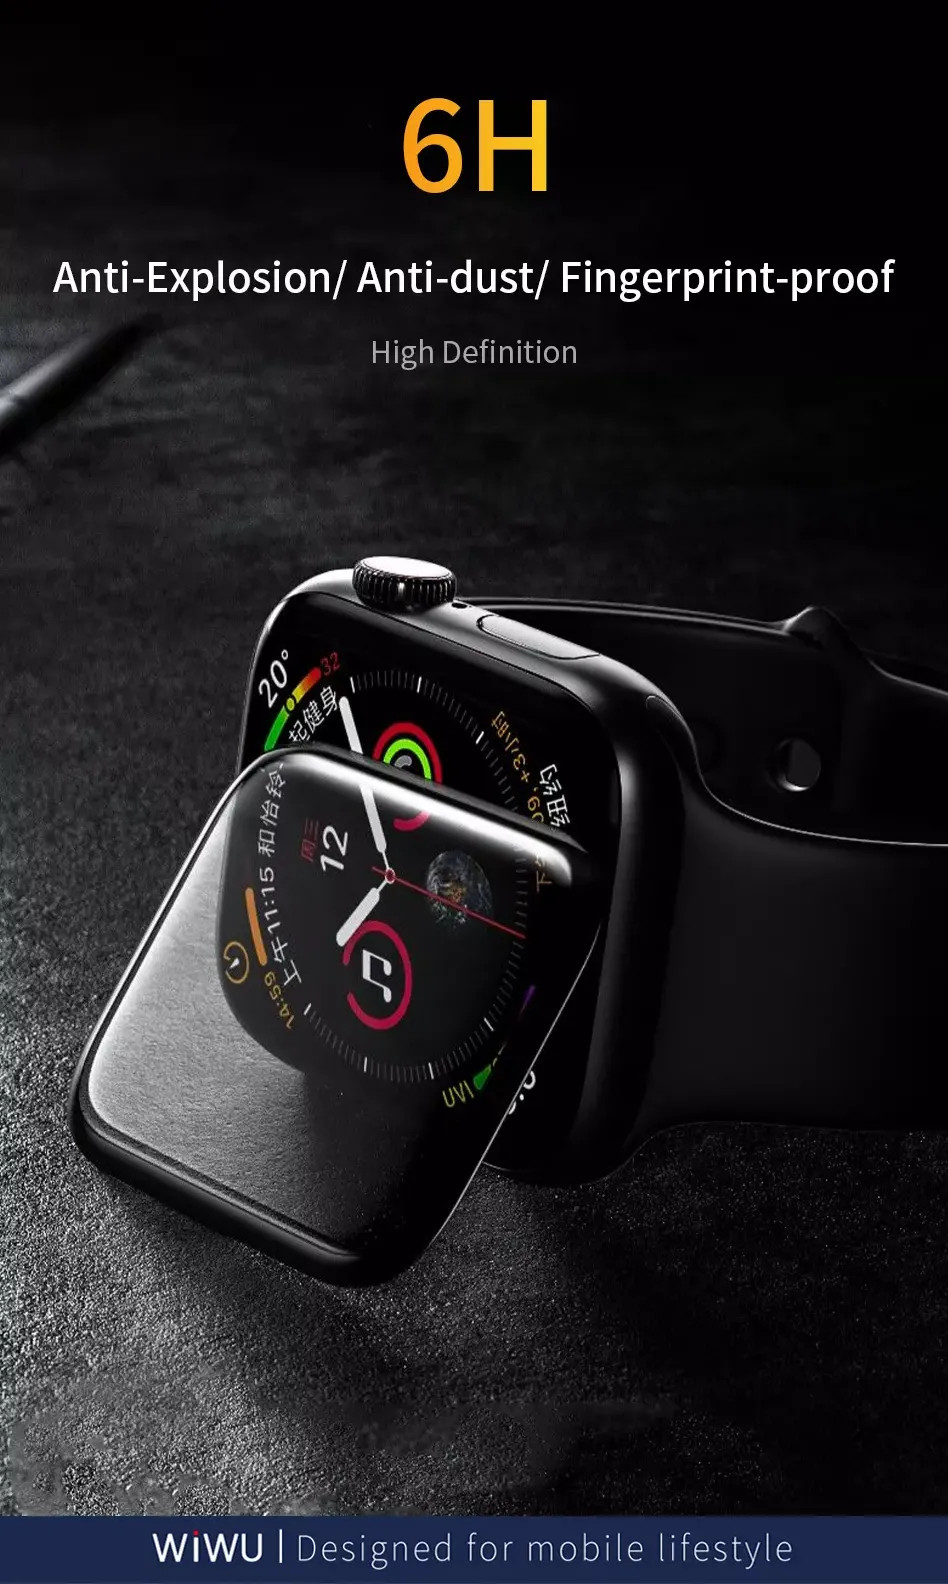 Bộ 2 miếng dán màn hình kính cường lực Full 3D cho Apple Watch 38mm hiệu WIWU iVista